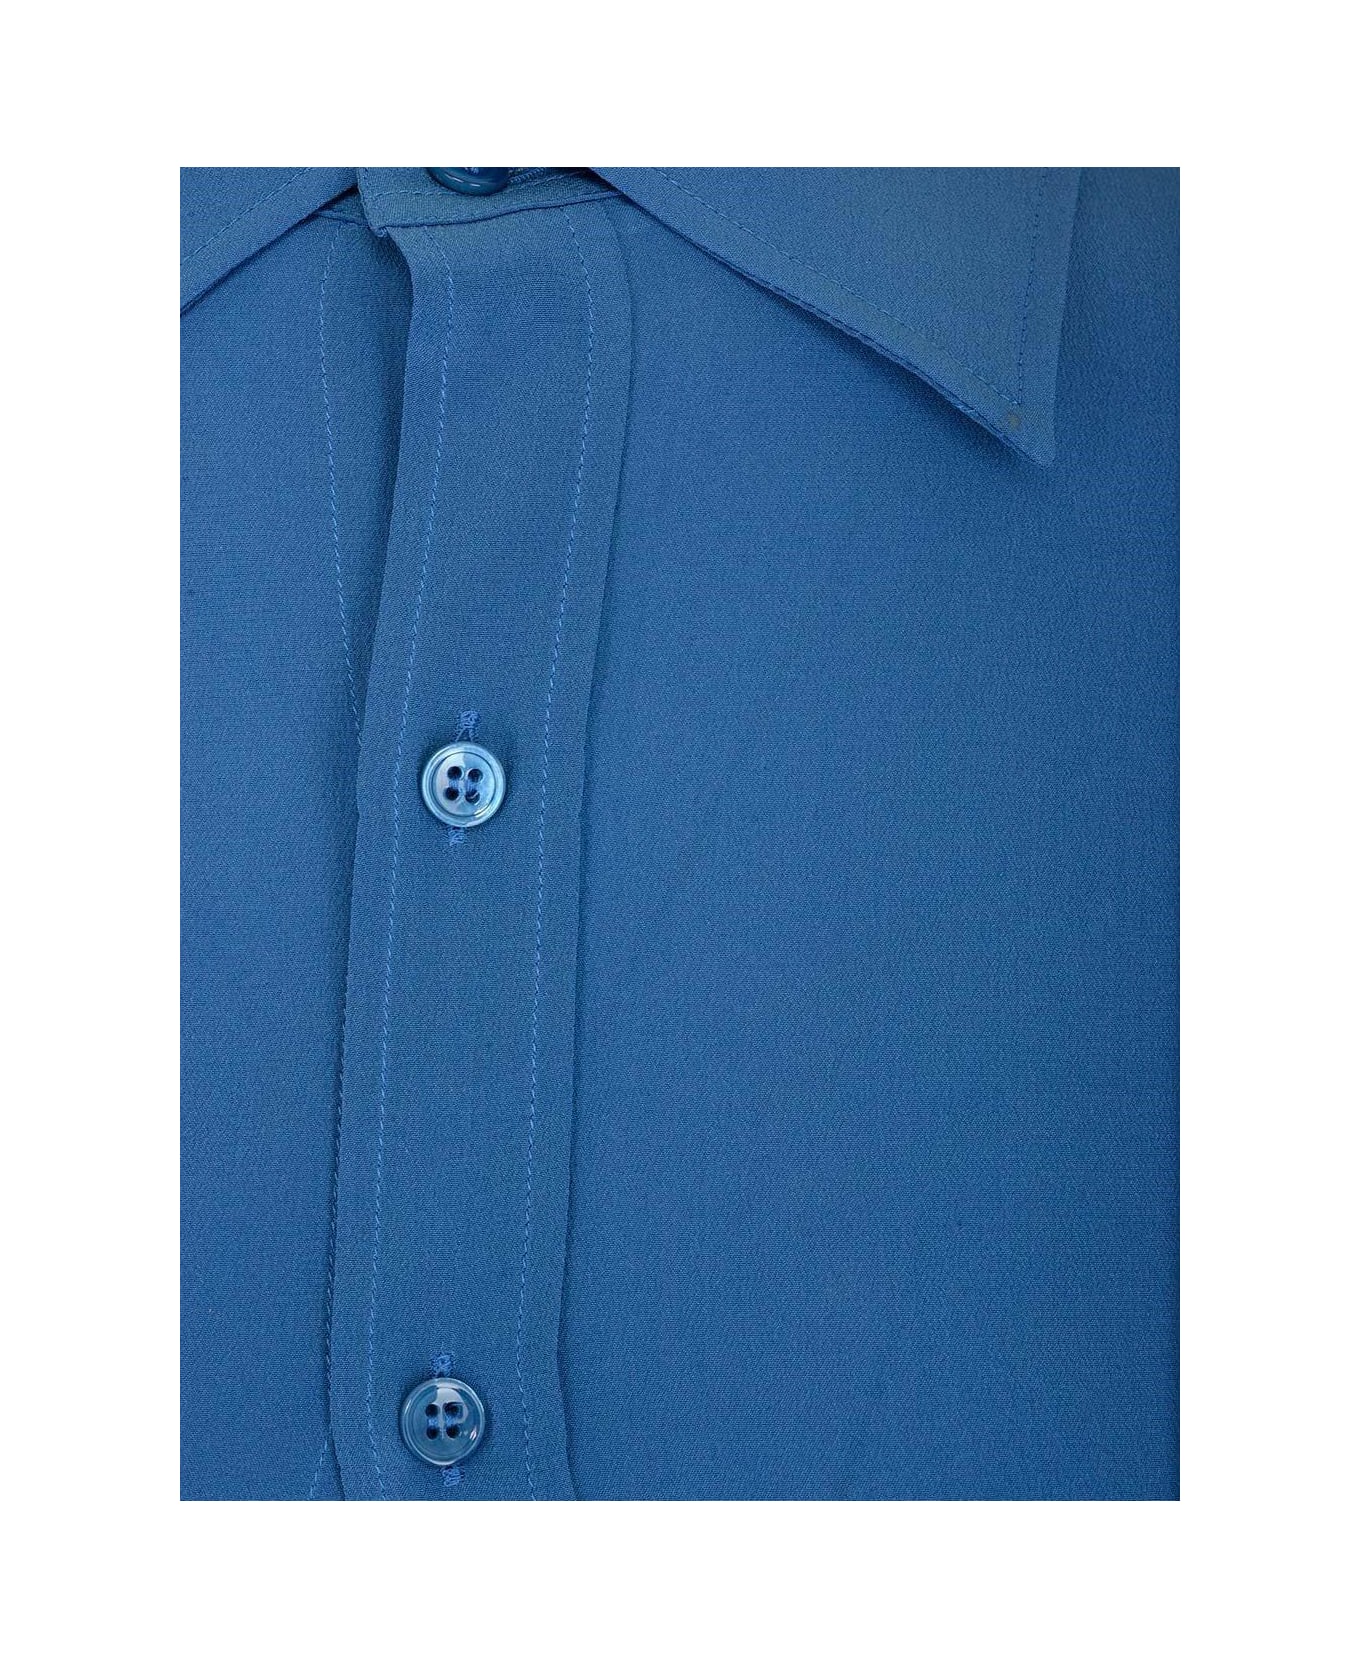 Saint Laurent Crepe De Chine Fitted Shirt - Deep blue